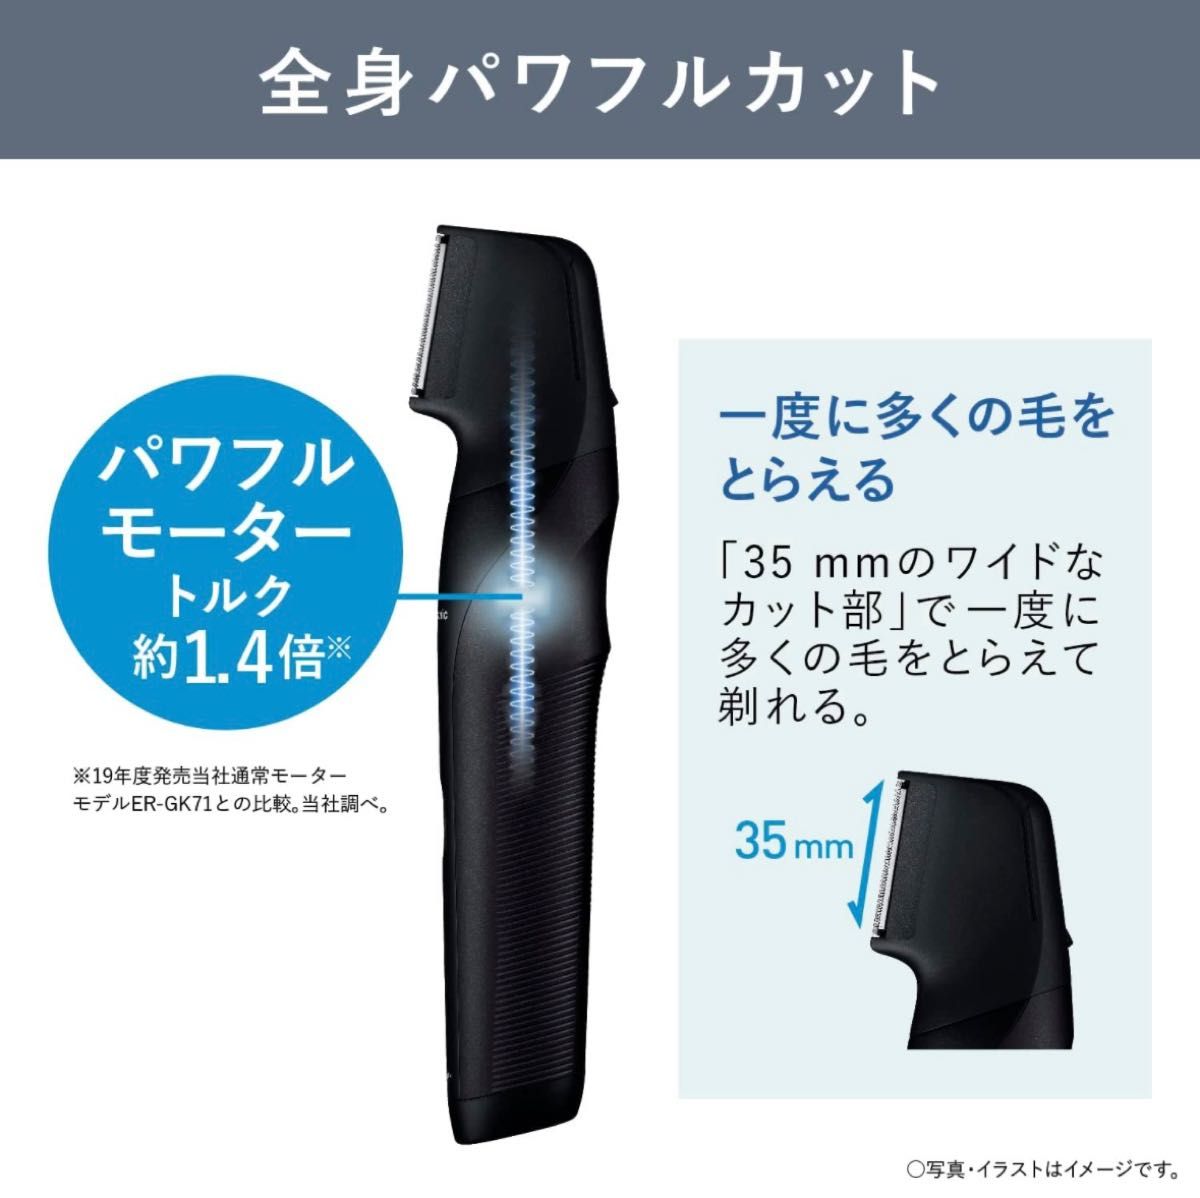 【新品未使用】パナソニック ボディトリマー ボディシェーバー VIO対応 お風呂剃り可 メンズ 黒 ER-GK82-K